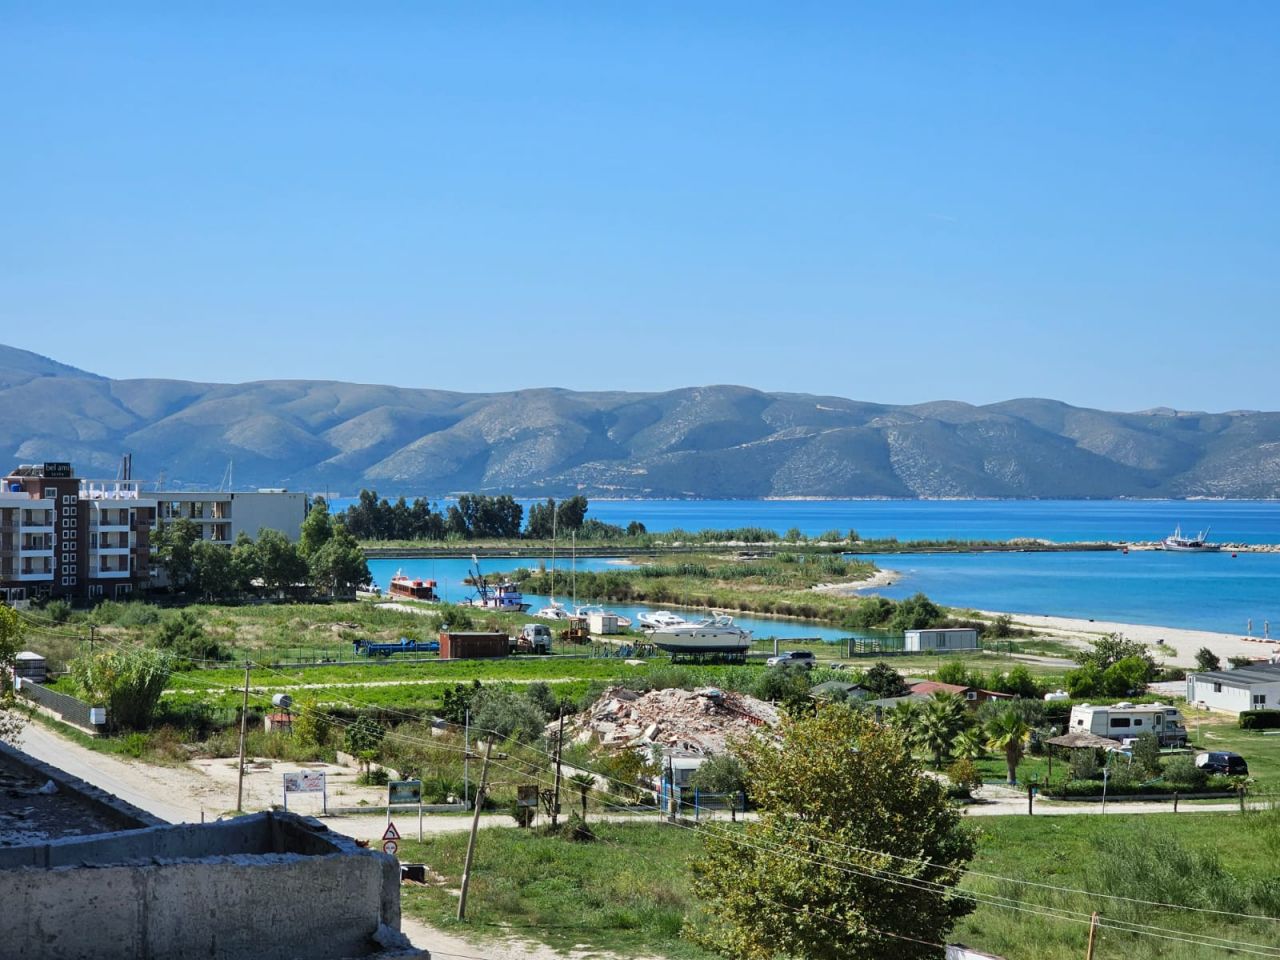 Wohnung Zum Verkauf In Vlora, Albanien, In Einer Guten Gegend Gelegen, Nur Wenige Schritte Vom Strand Entfernt